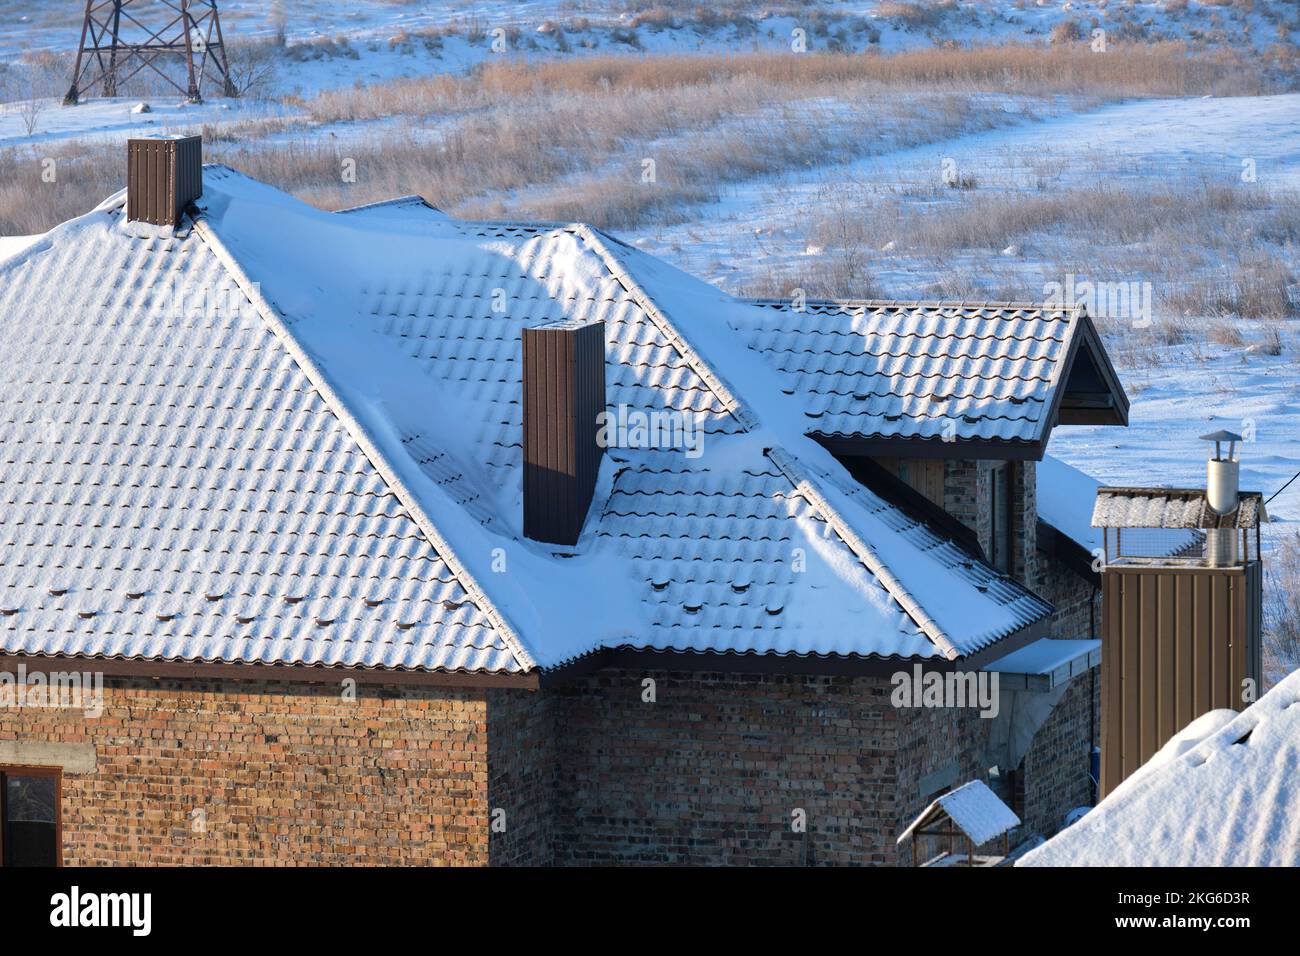 Protezione da neve per la sicurezza in inverno sul tetto della casa coperto con scandole in ceramica. Rivestimento piastrellato dell'edificio Foto Stock